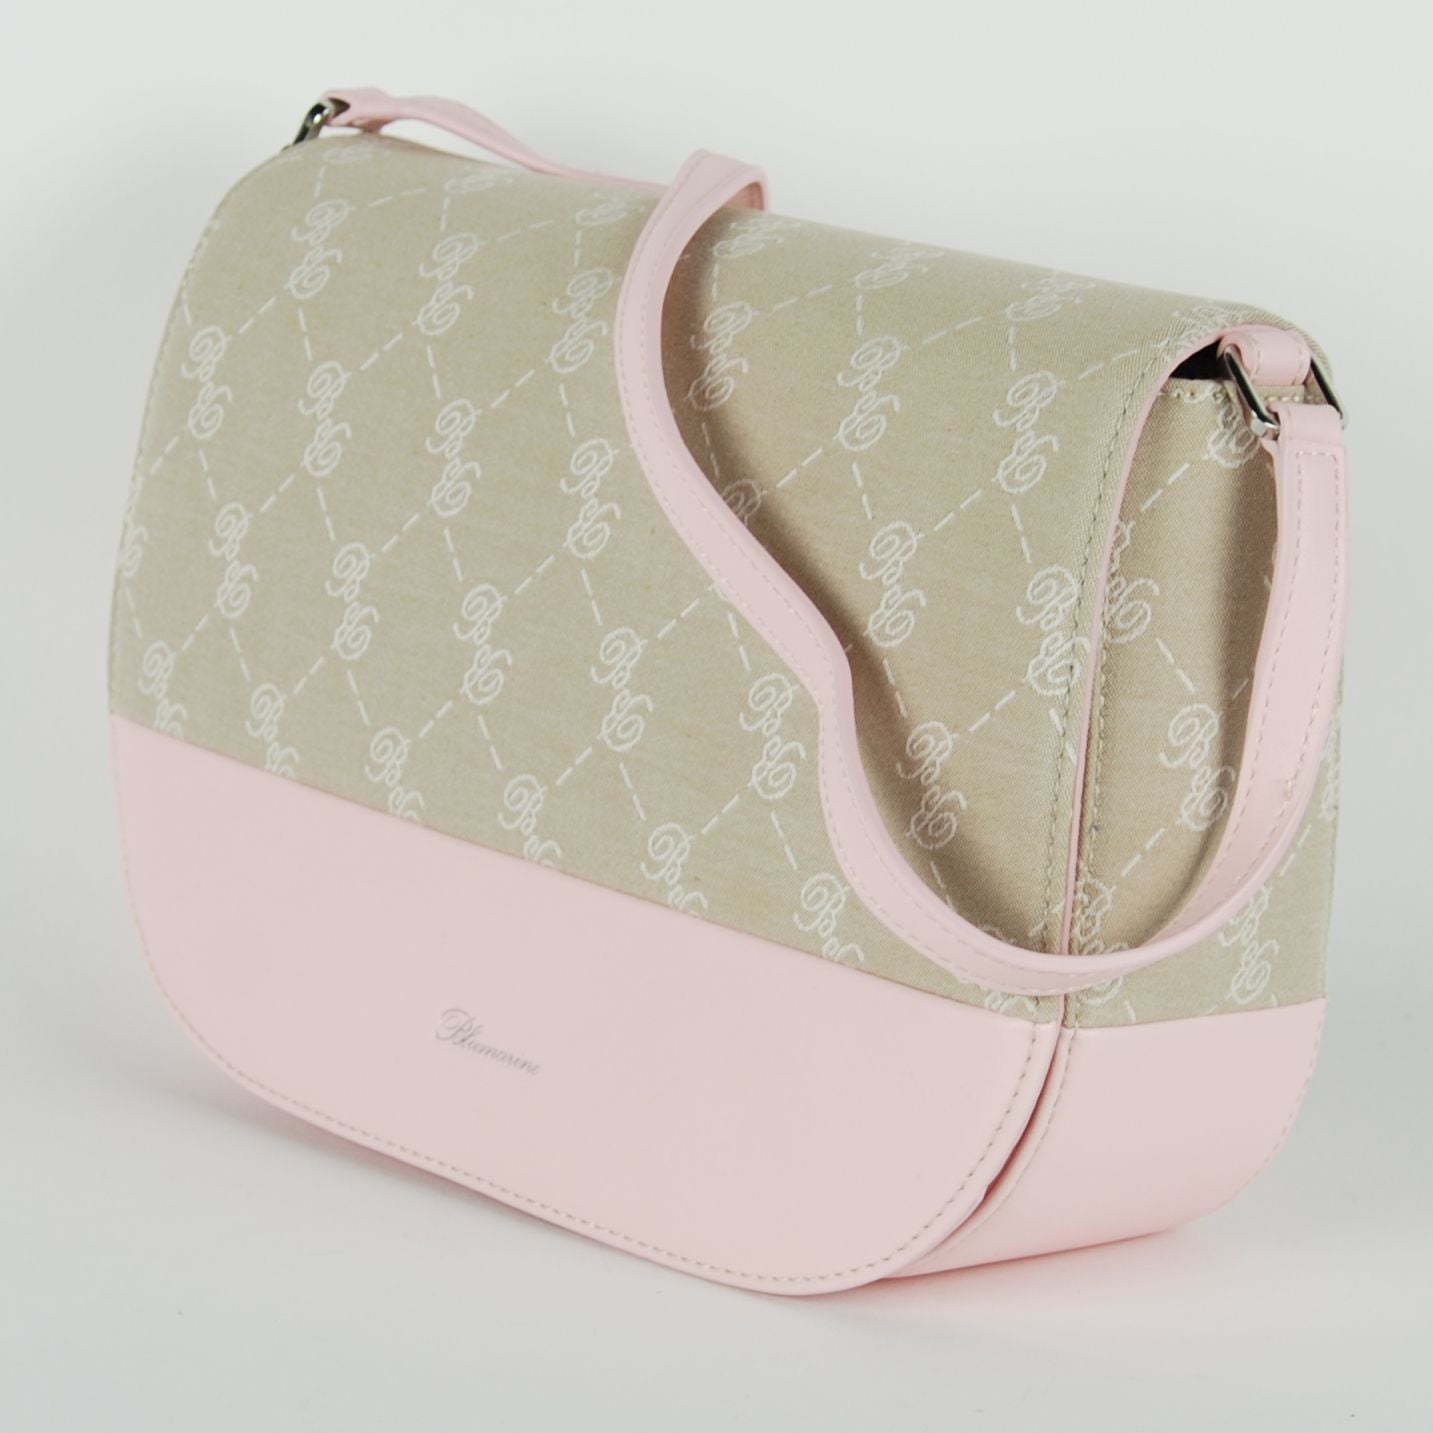 Diane Pink Shoulder Bag - Chic & Versatile